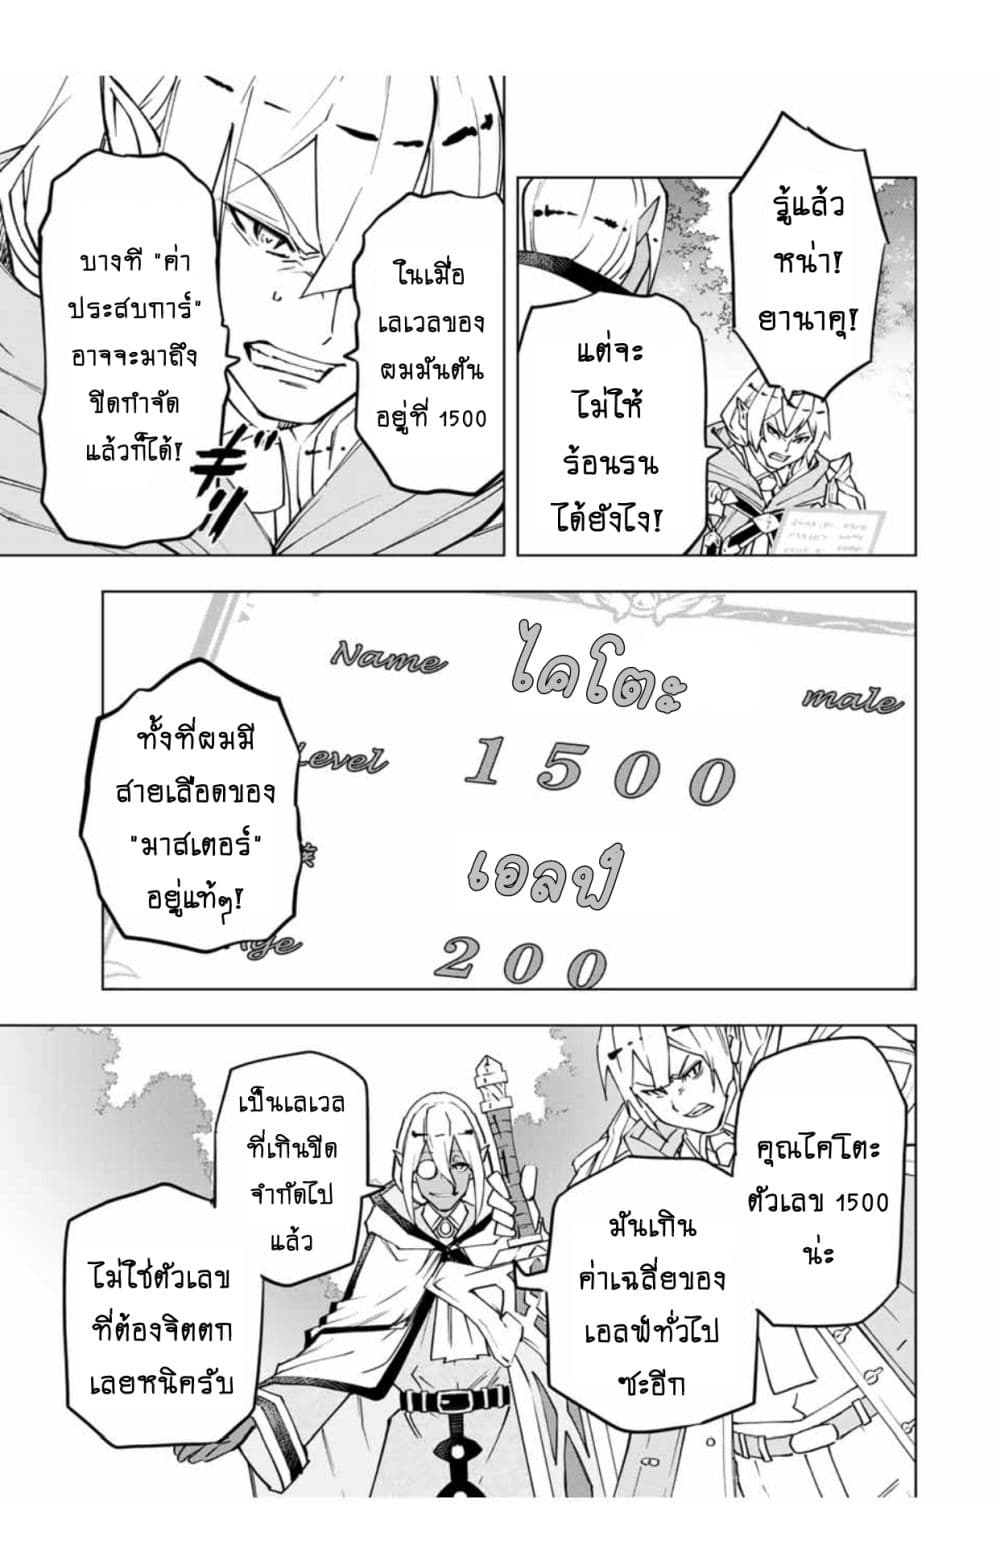 อ่านการ์ตูน Shinjiteita Nakama Tachi Ni Dungeon Okuchi De Korosare Kaketa ga Gift 『Mugen Gacha』 De Level 9999 No Nakama Tachi Wo Te Ni Irete Moto Party Member To Sekai Ni Fukushu & 『Zama A!』 Shimasu! 11.1 ภาพที่ 6